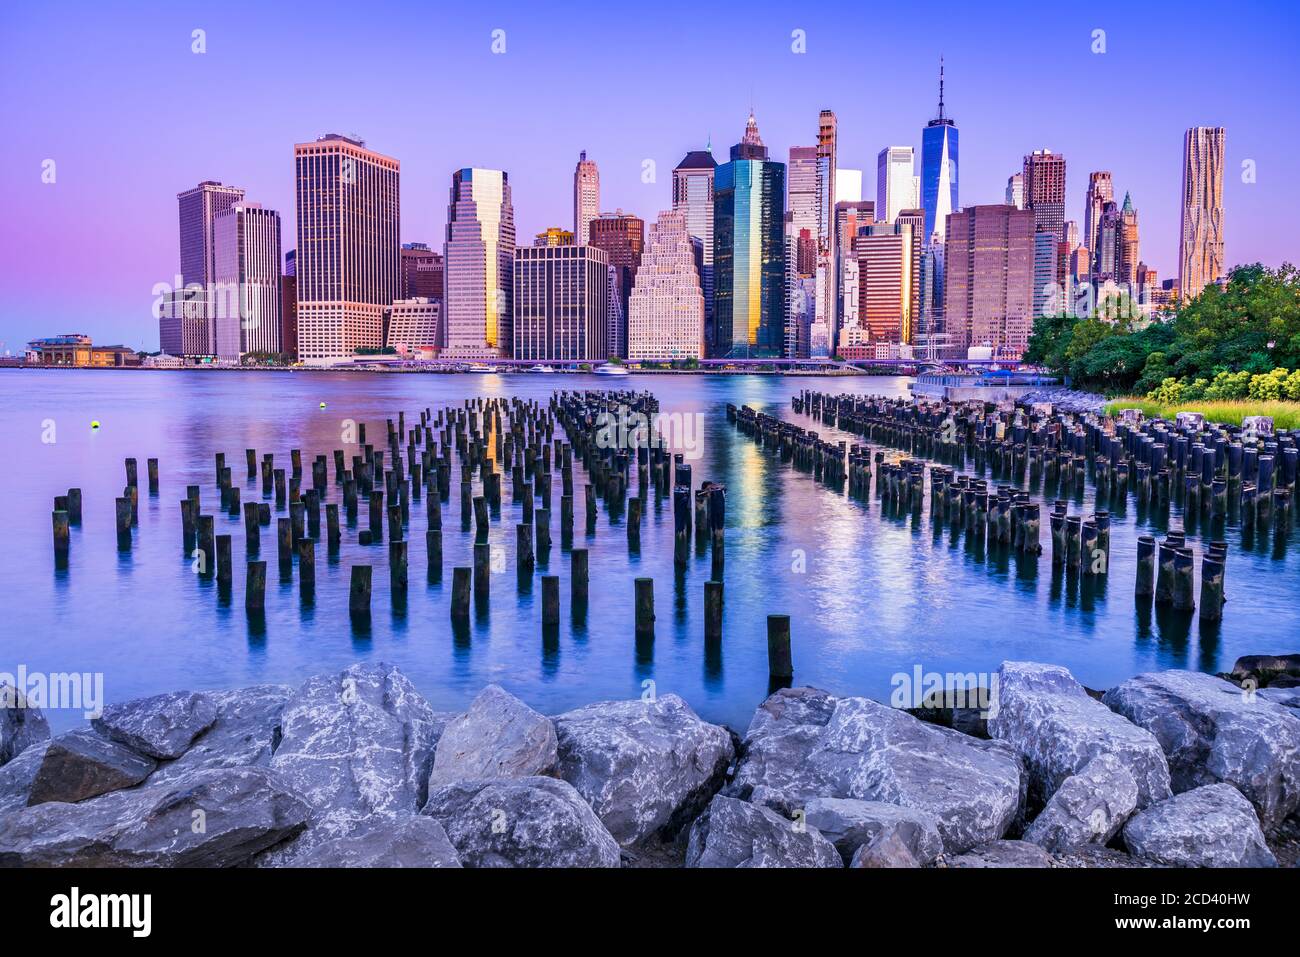 New York. Vue imprenable sur le Lower Manhattan Skyline depuis Brooklyn, États-Unis d'Amérique. Banque D'Images